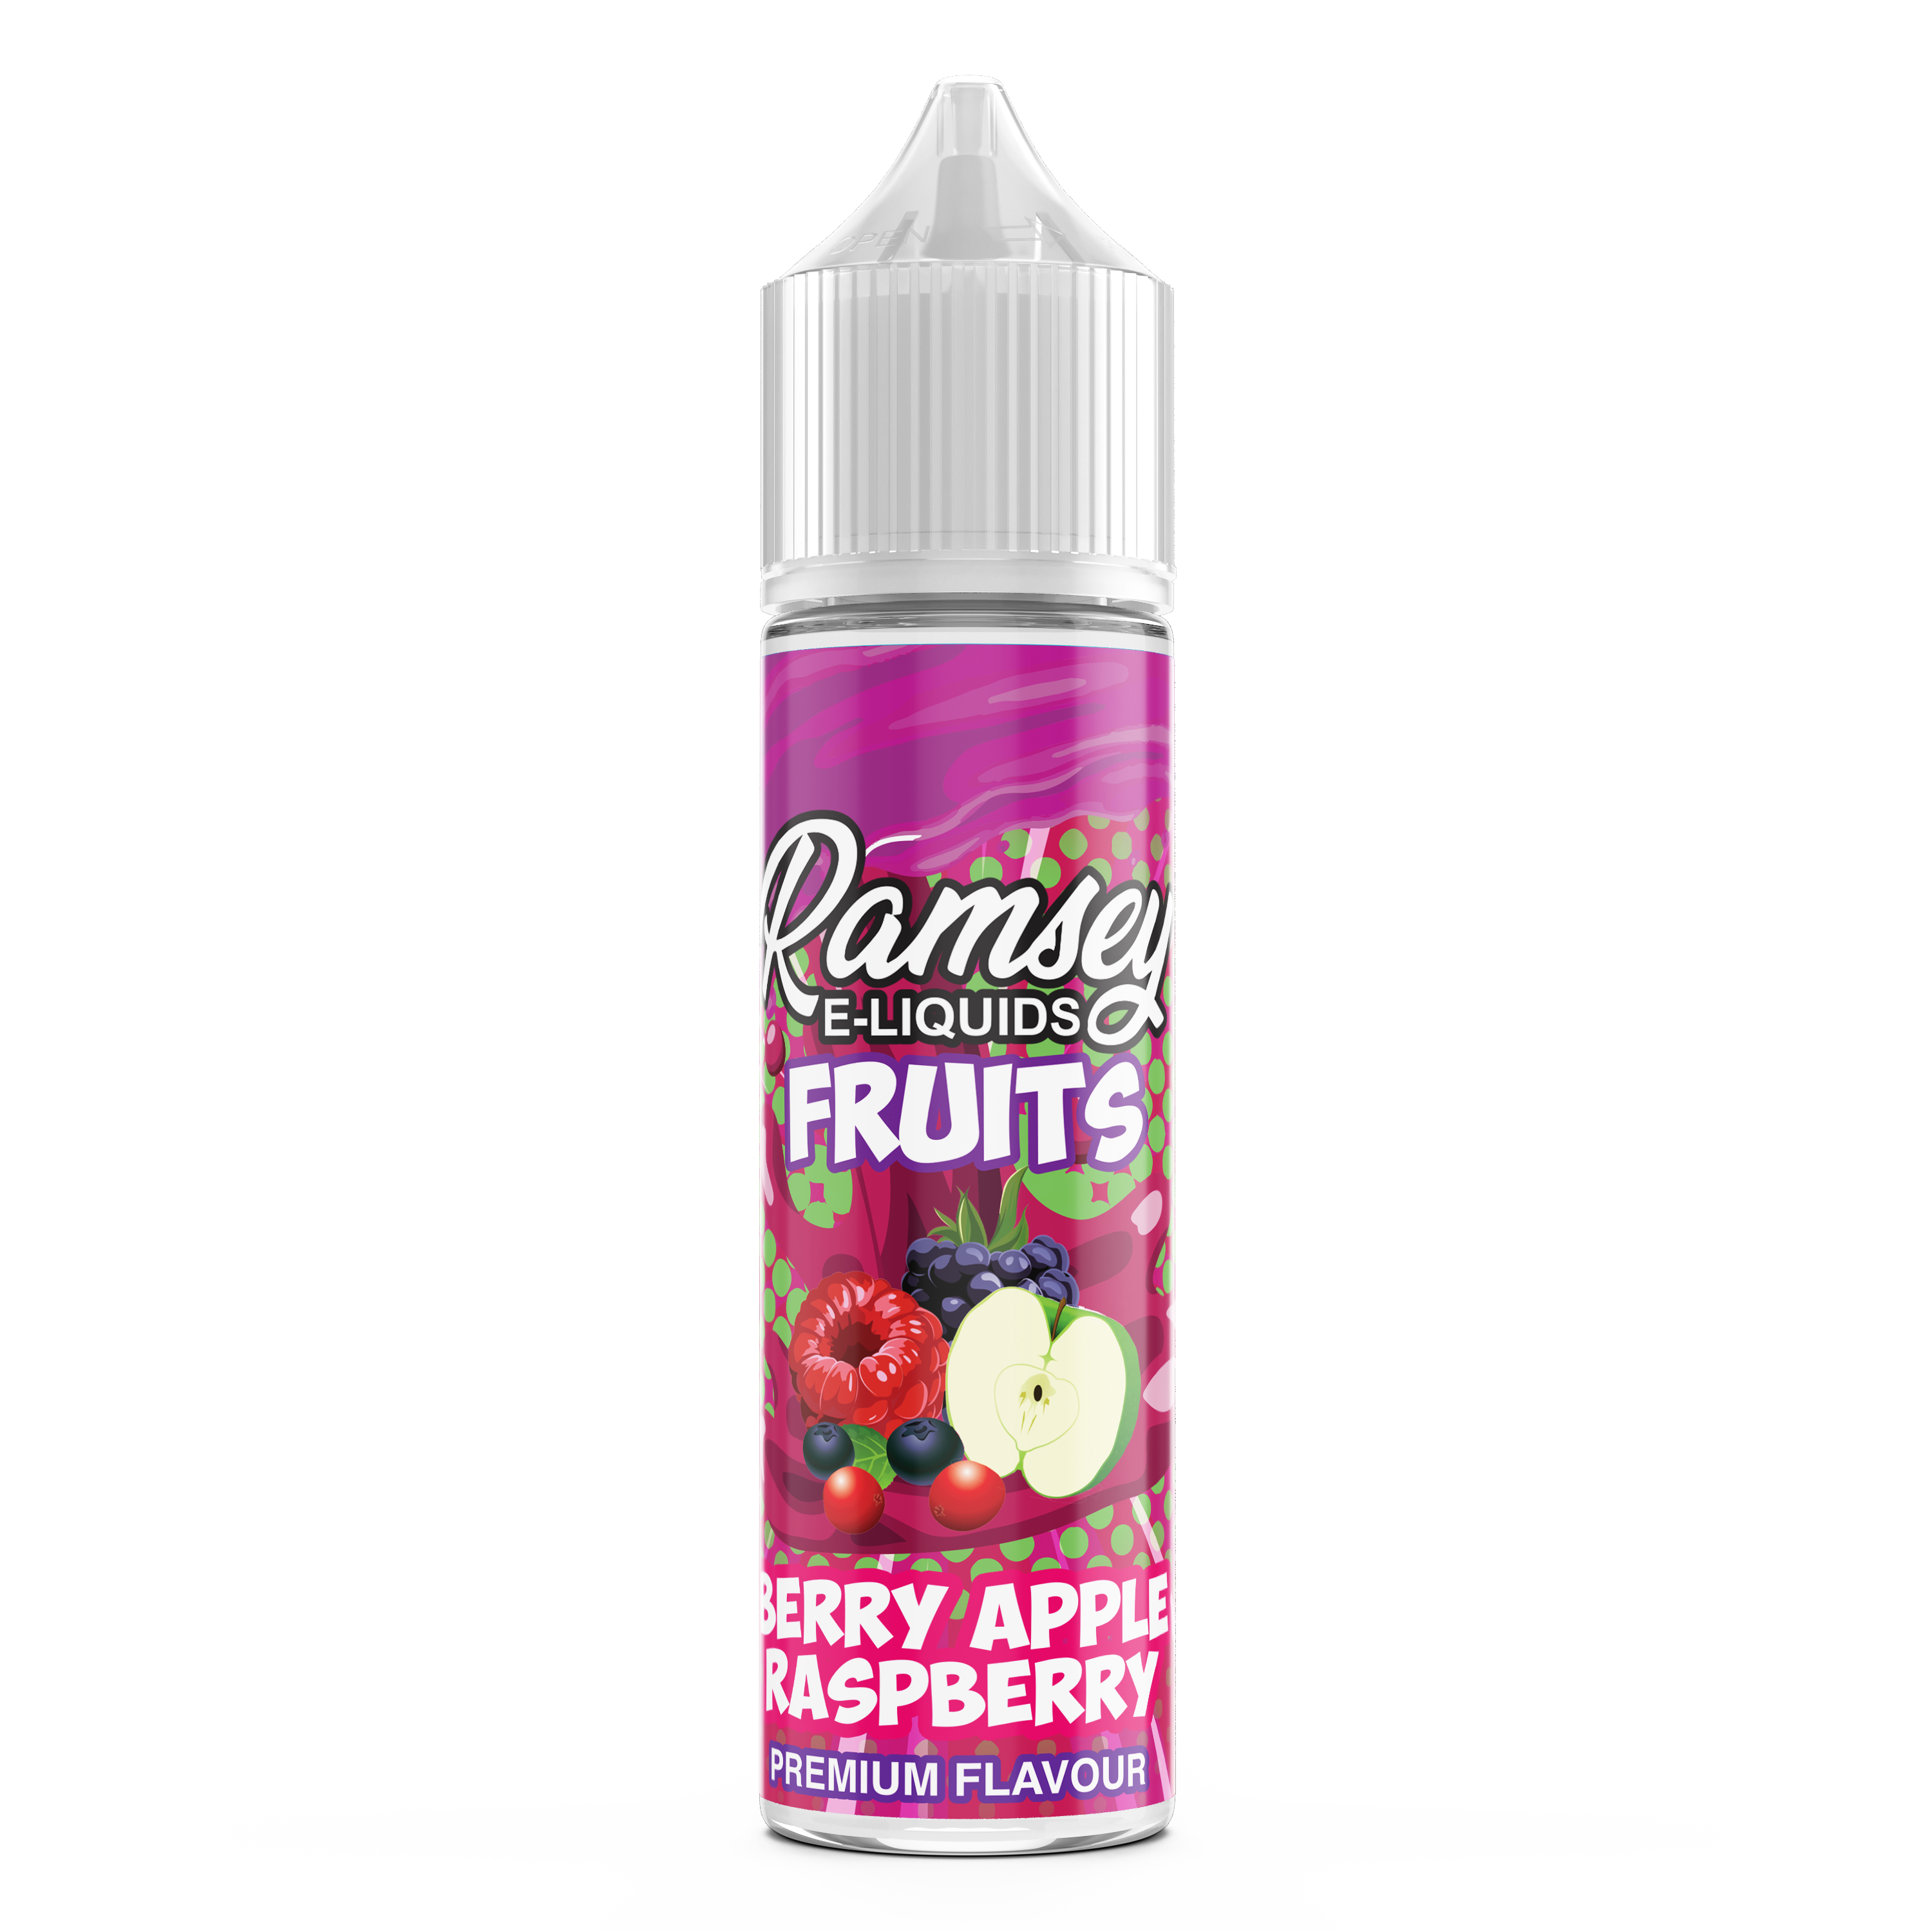 Ramsey E-Liquids Fruits: Berry Apple Raspberry  0mg 50ml Shortfill E-Liquid